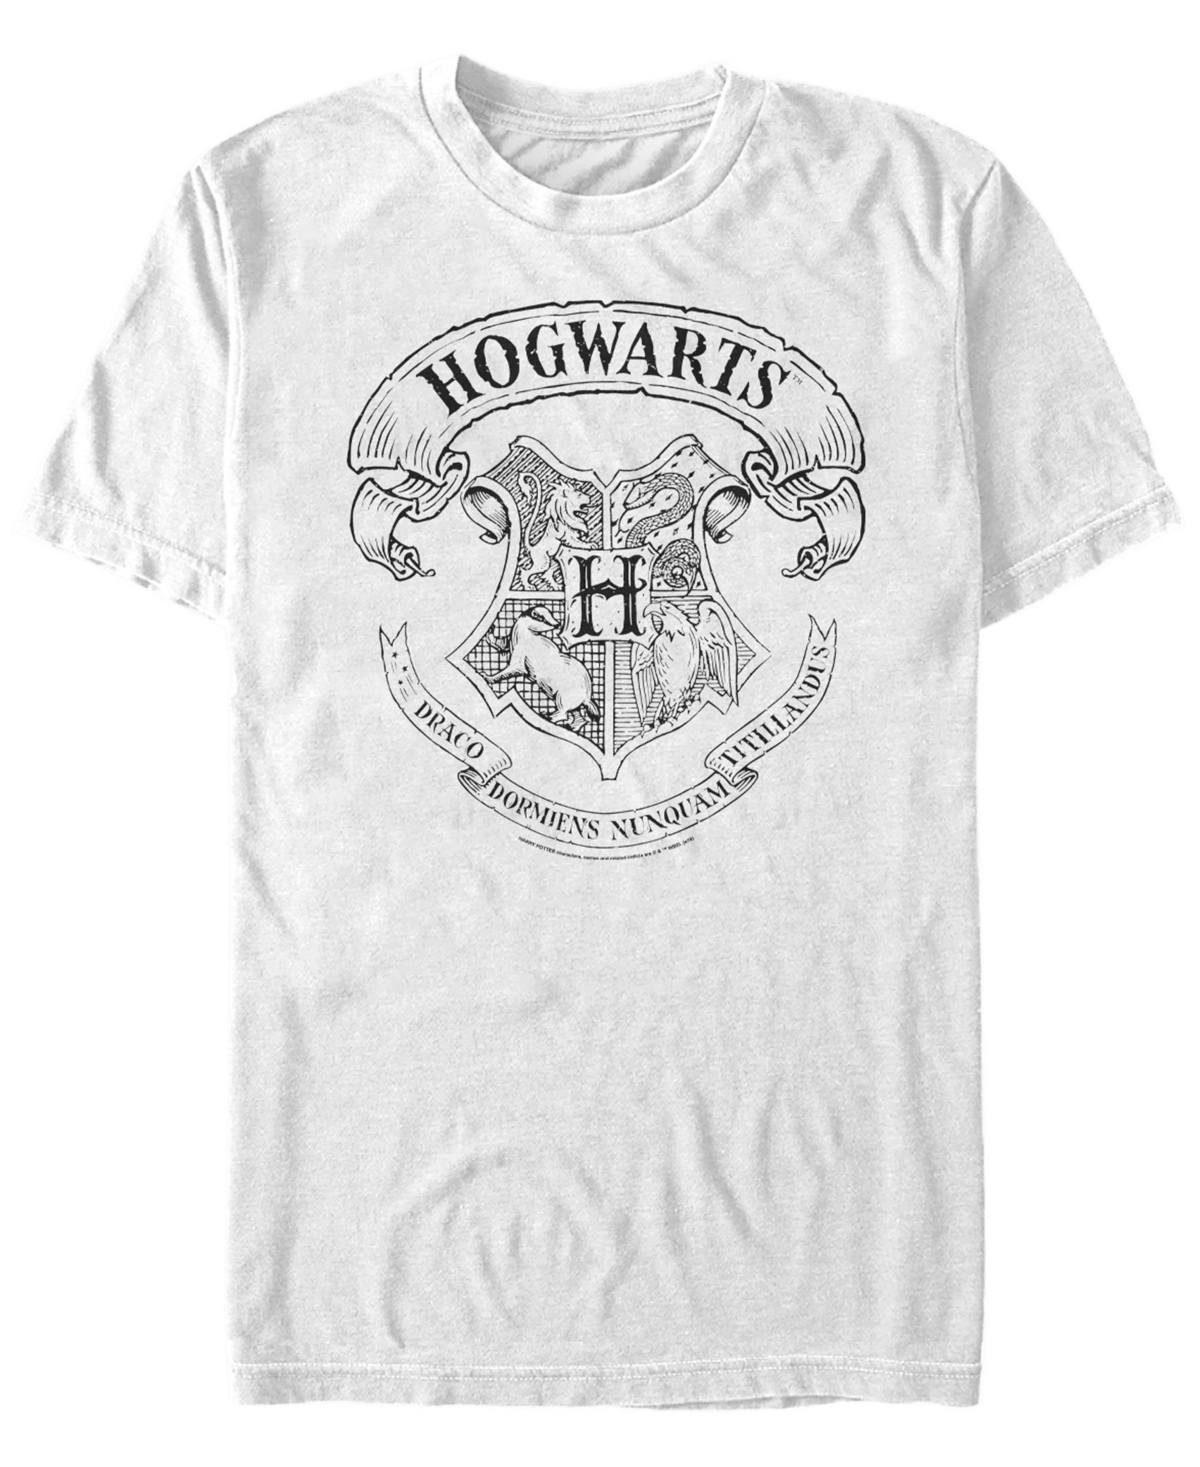 Men's Hogwarts Crest Short Sleeve Crew T-shirt - Light Blue